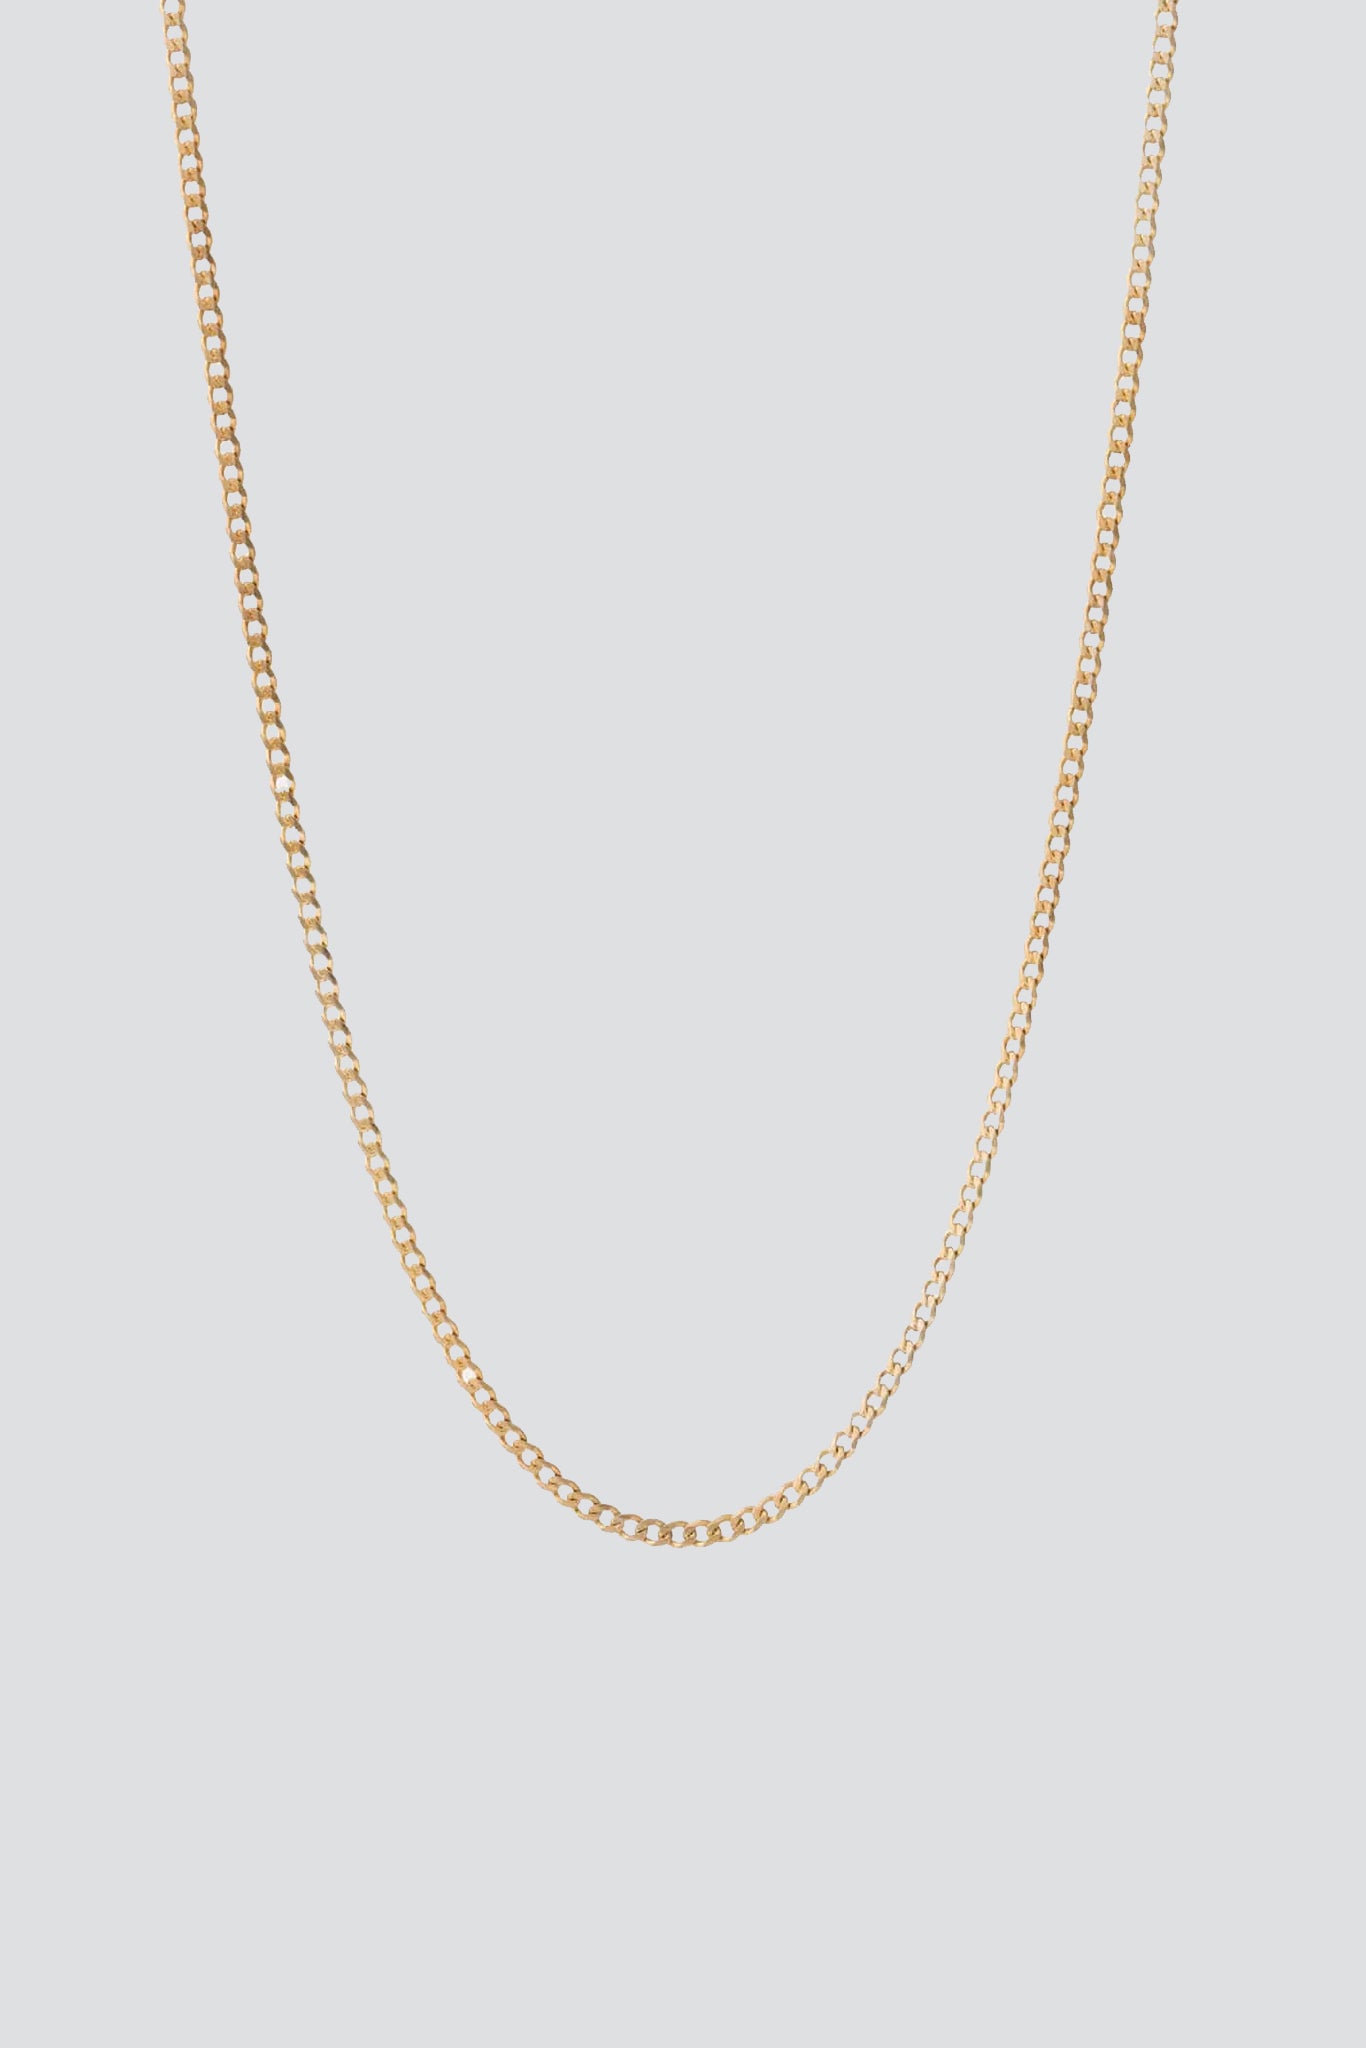 Gold Vermeil 3mm Cuban Chain Necklace